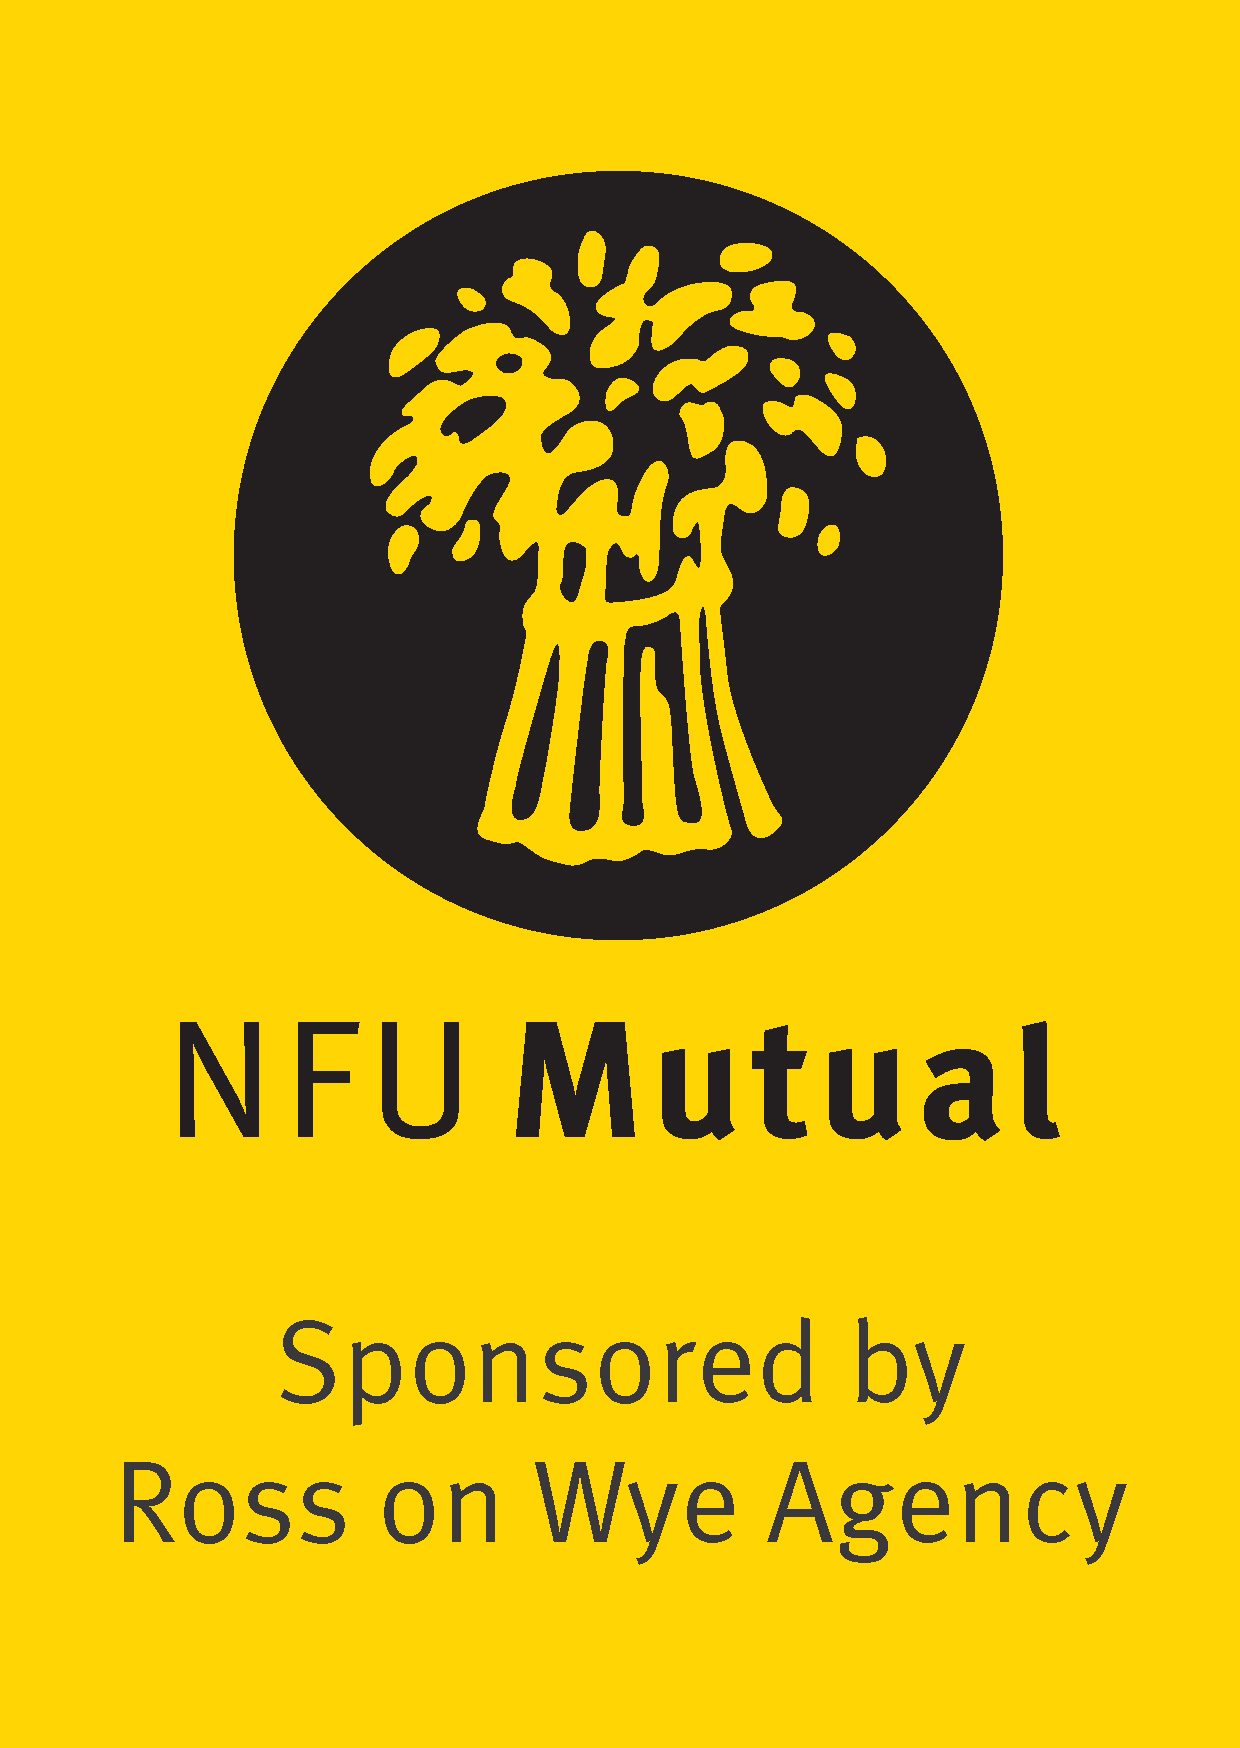 NFUM logo